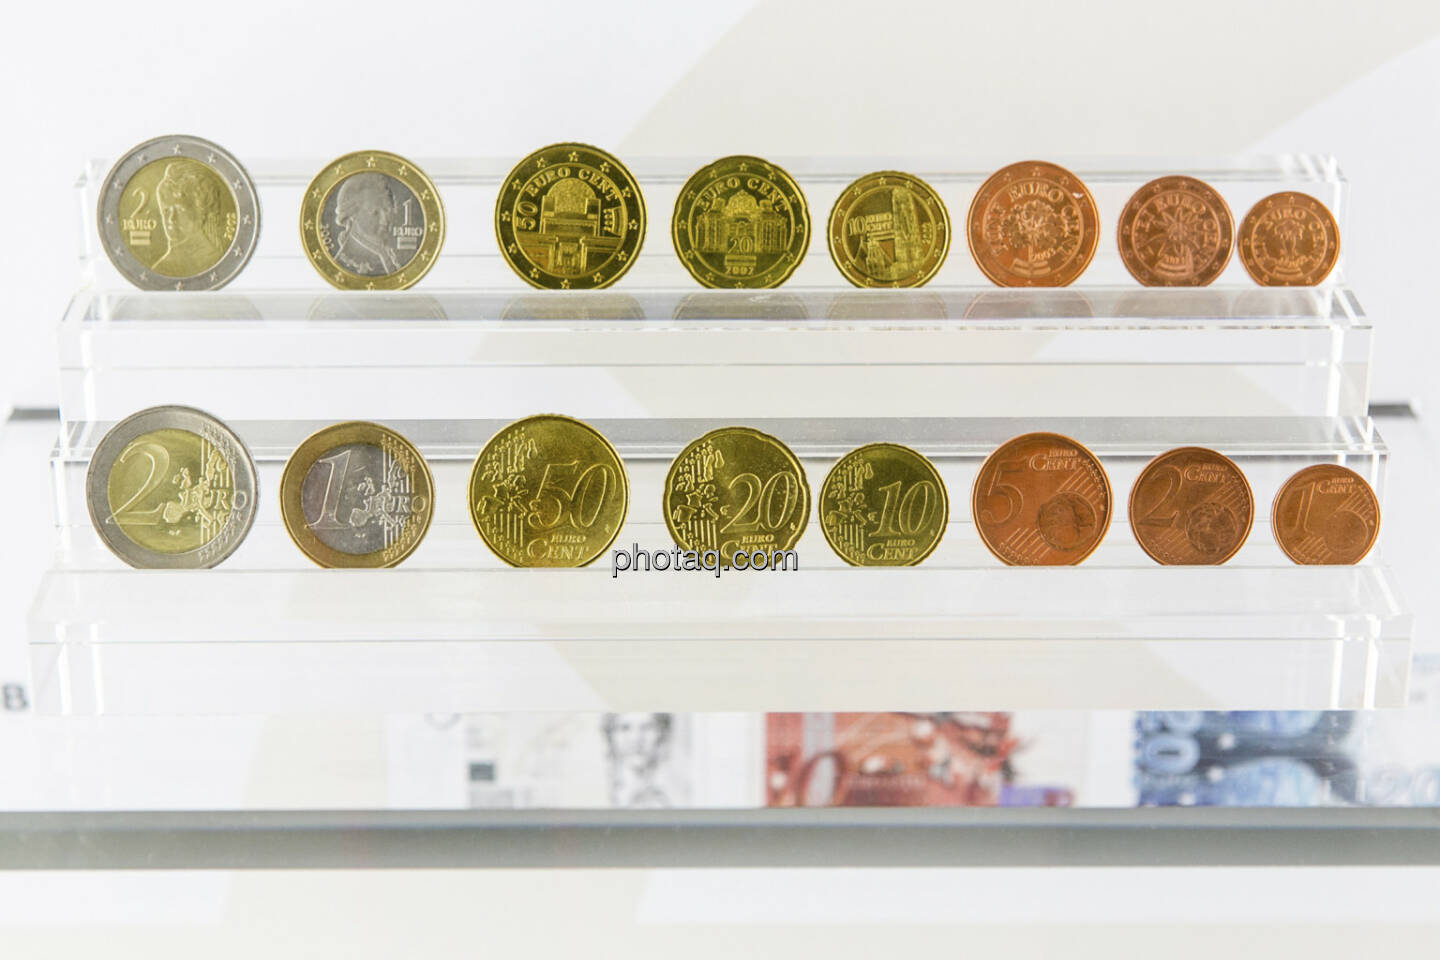 alle österreichischen Euromünzen (Vorder- und Rückseite), von 1 Cent bis 2 Euro